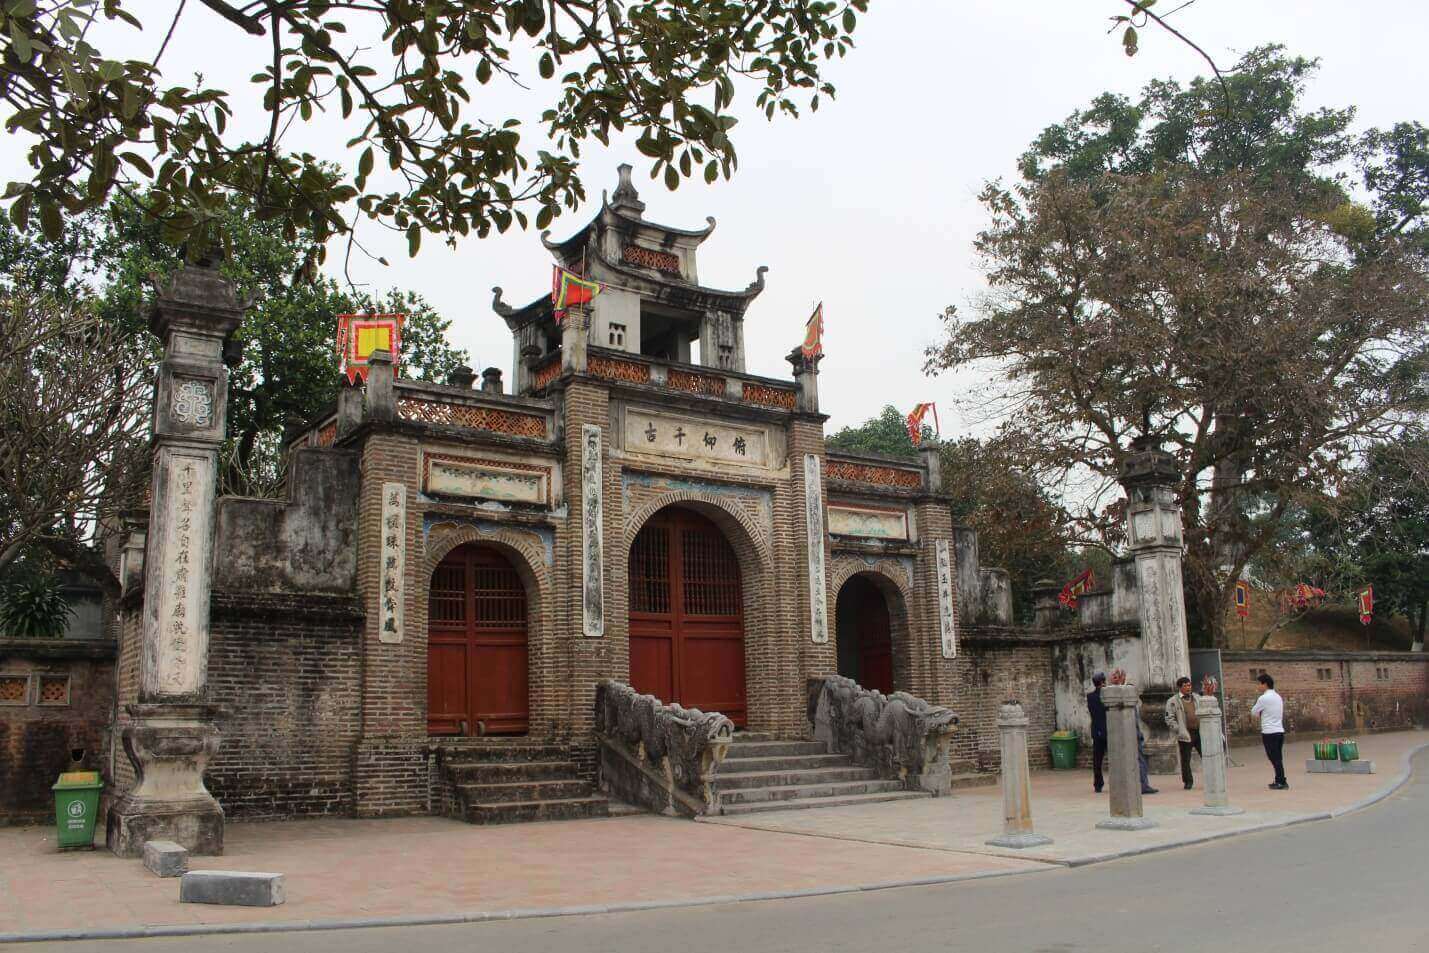 Khám phá Thành Cổ Loa cổ kính và độc đáo nhất Việt Nam 2